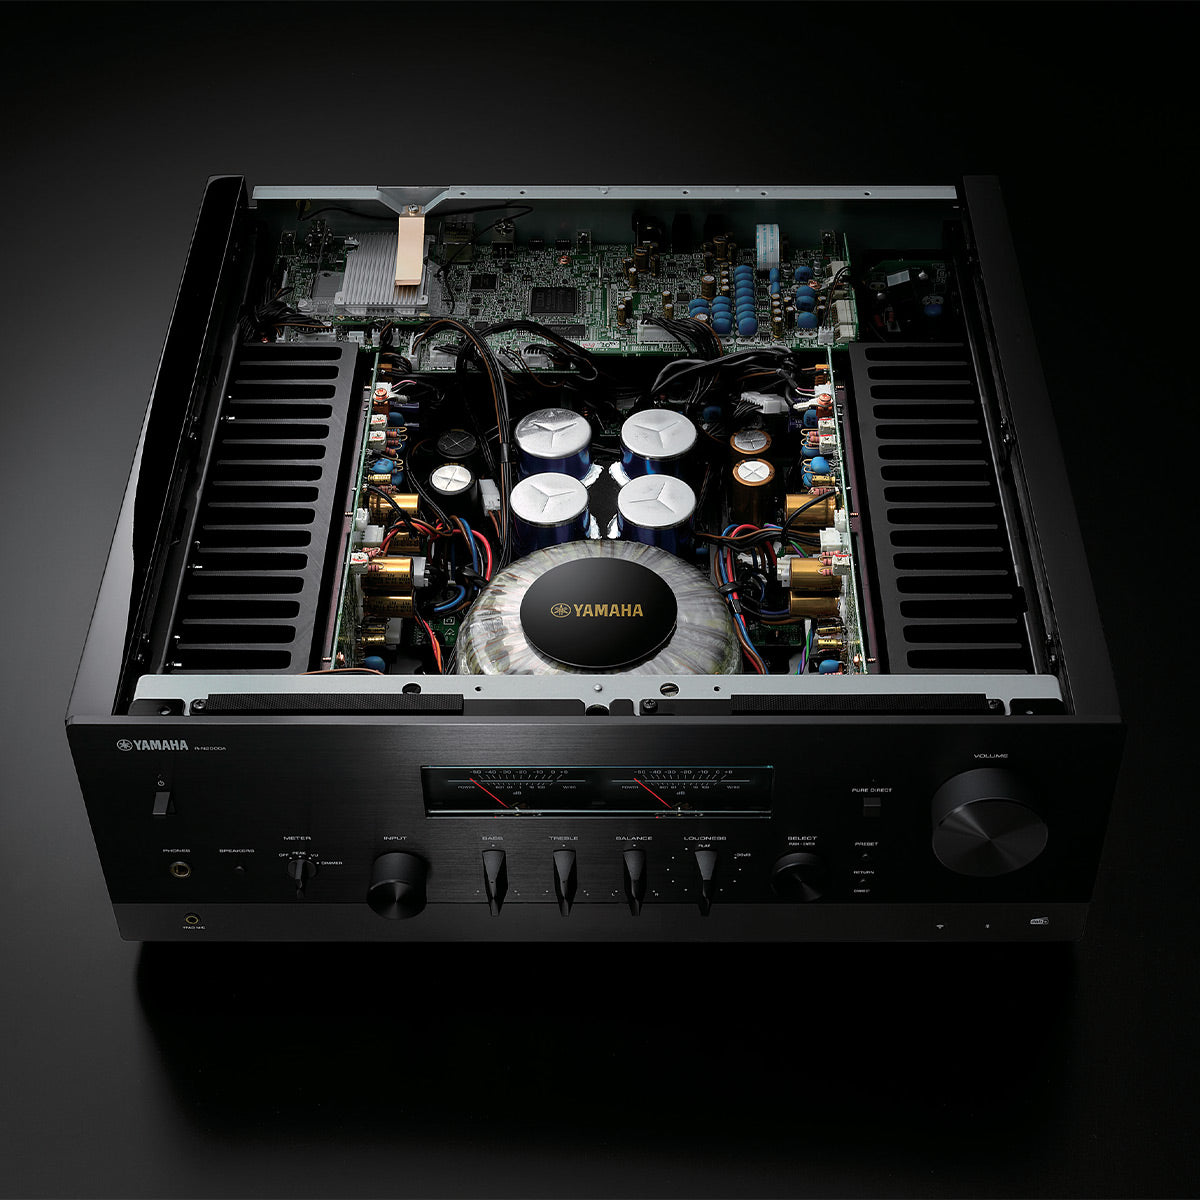 Yamaha A-S1200 Noir - Ampli Hi-Fi 